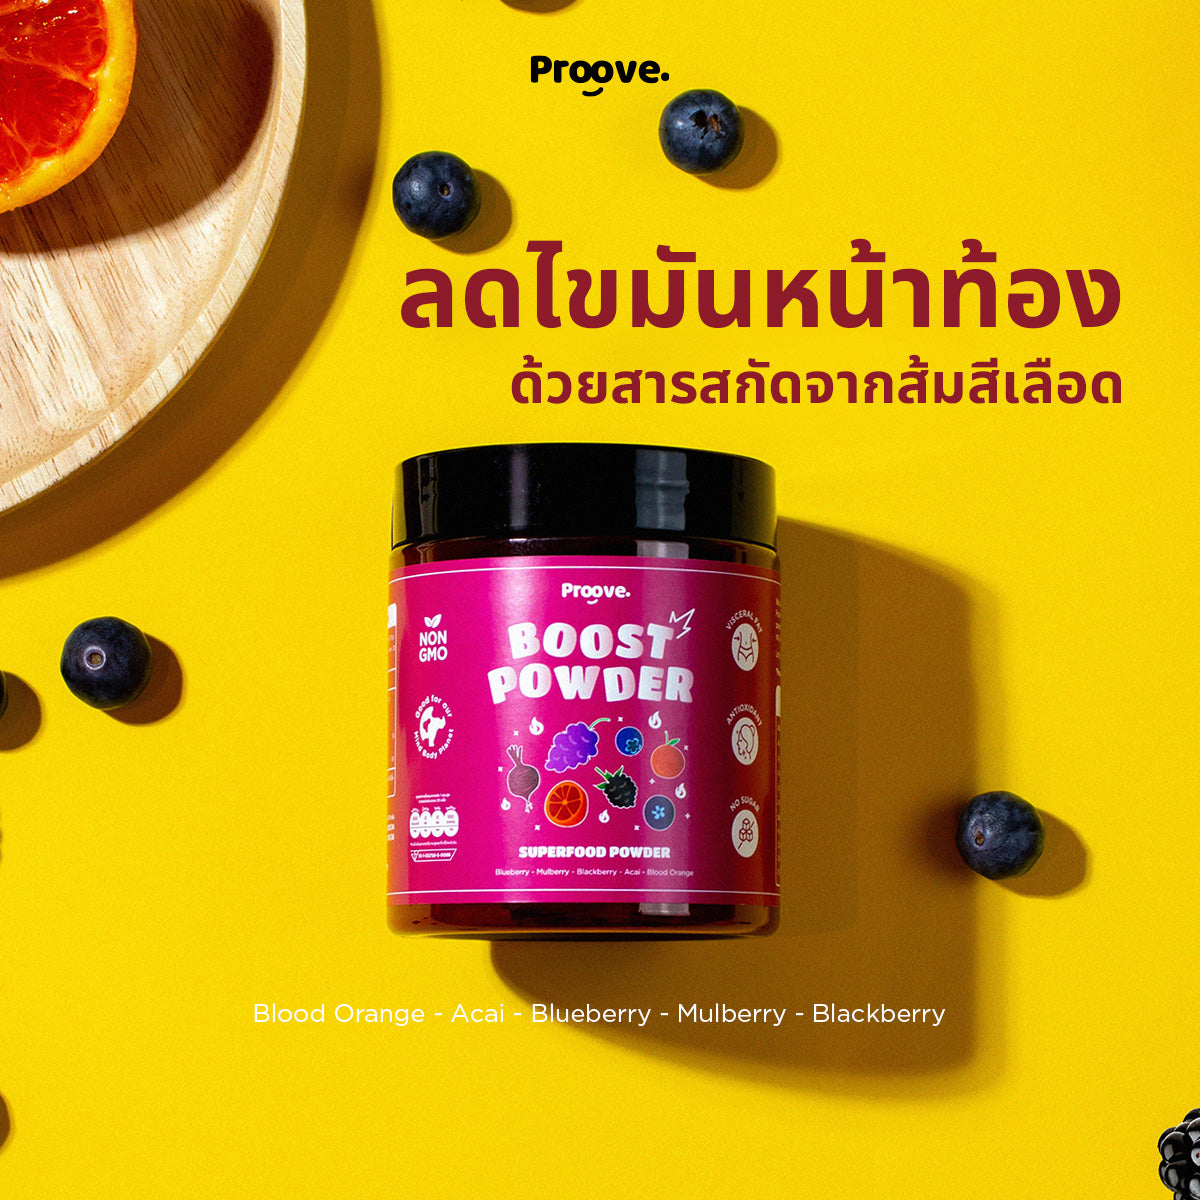 ลดไขมันหน้าท้องด้วยสารสกัดจากส้มสีเลือด Proove Powder (ผงซุปเปอร์ฟู้ด) สูตร Acai & Blood Orange Extract Mixed Berries